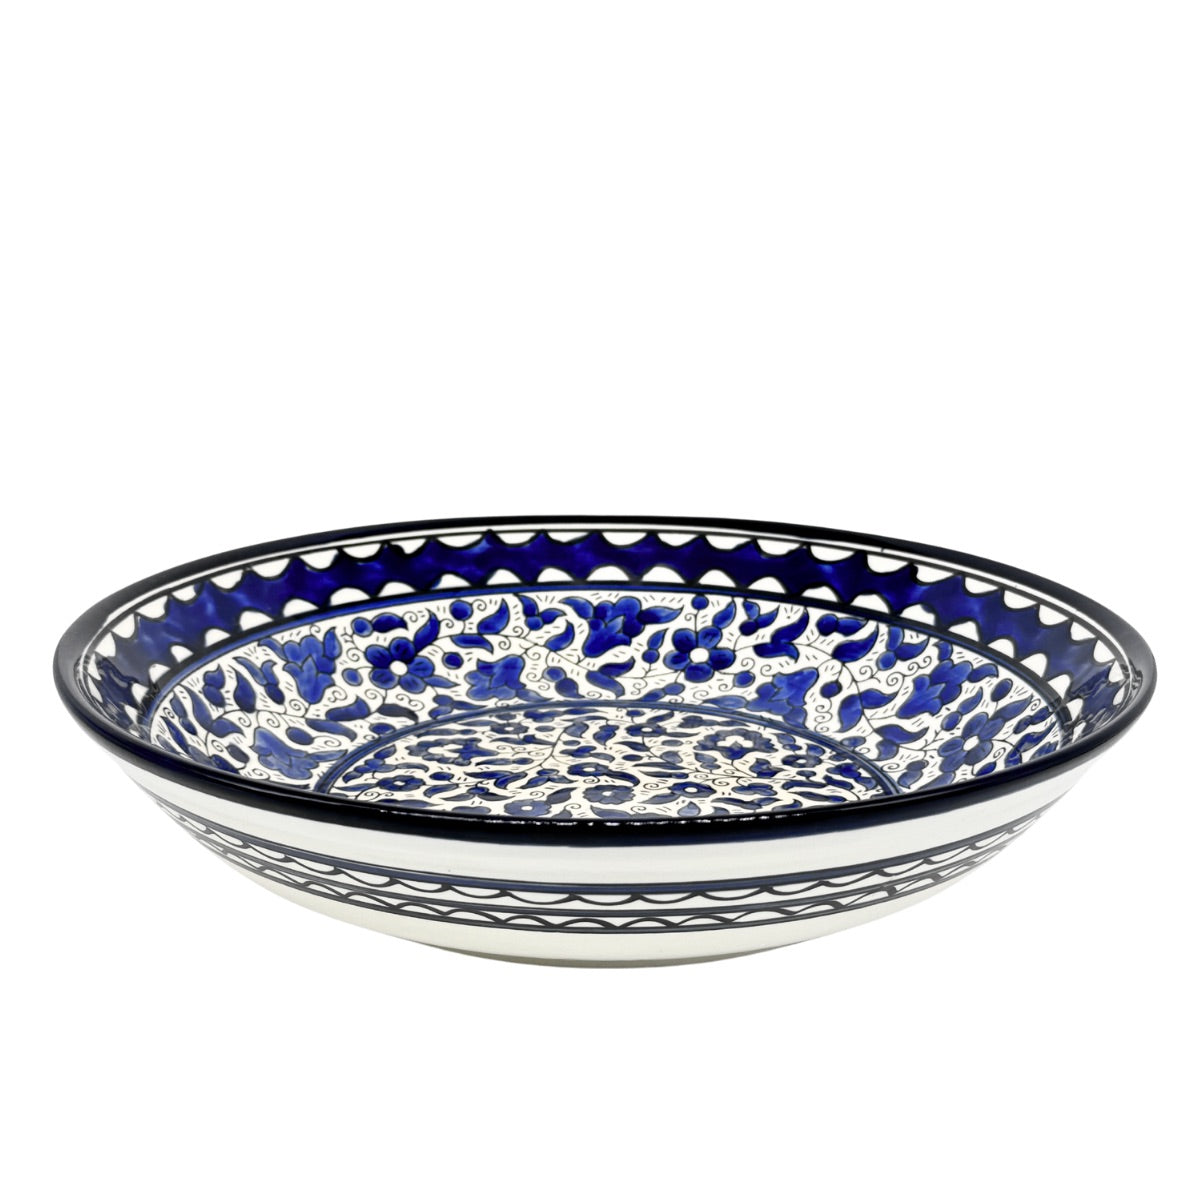 Ceramic Serving Bowl (13") - Classic Blue